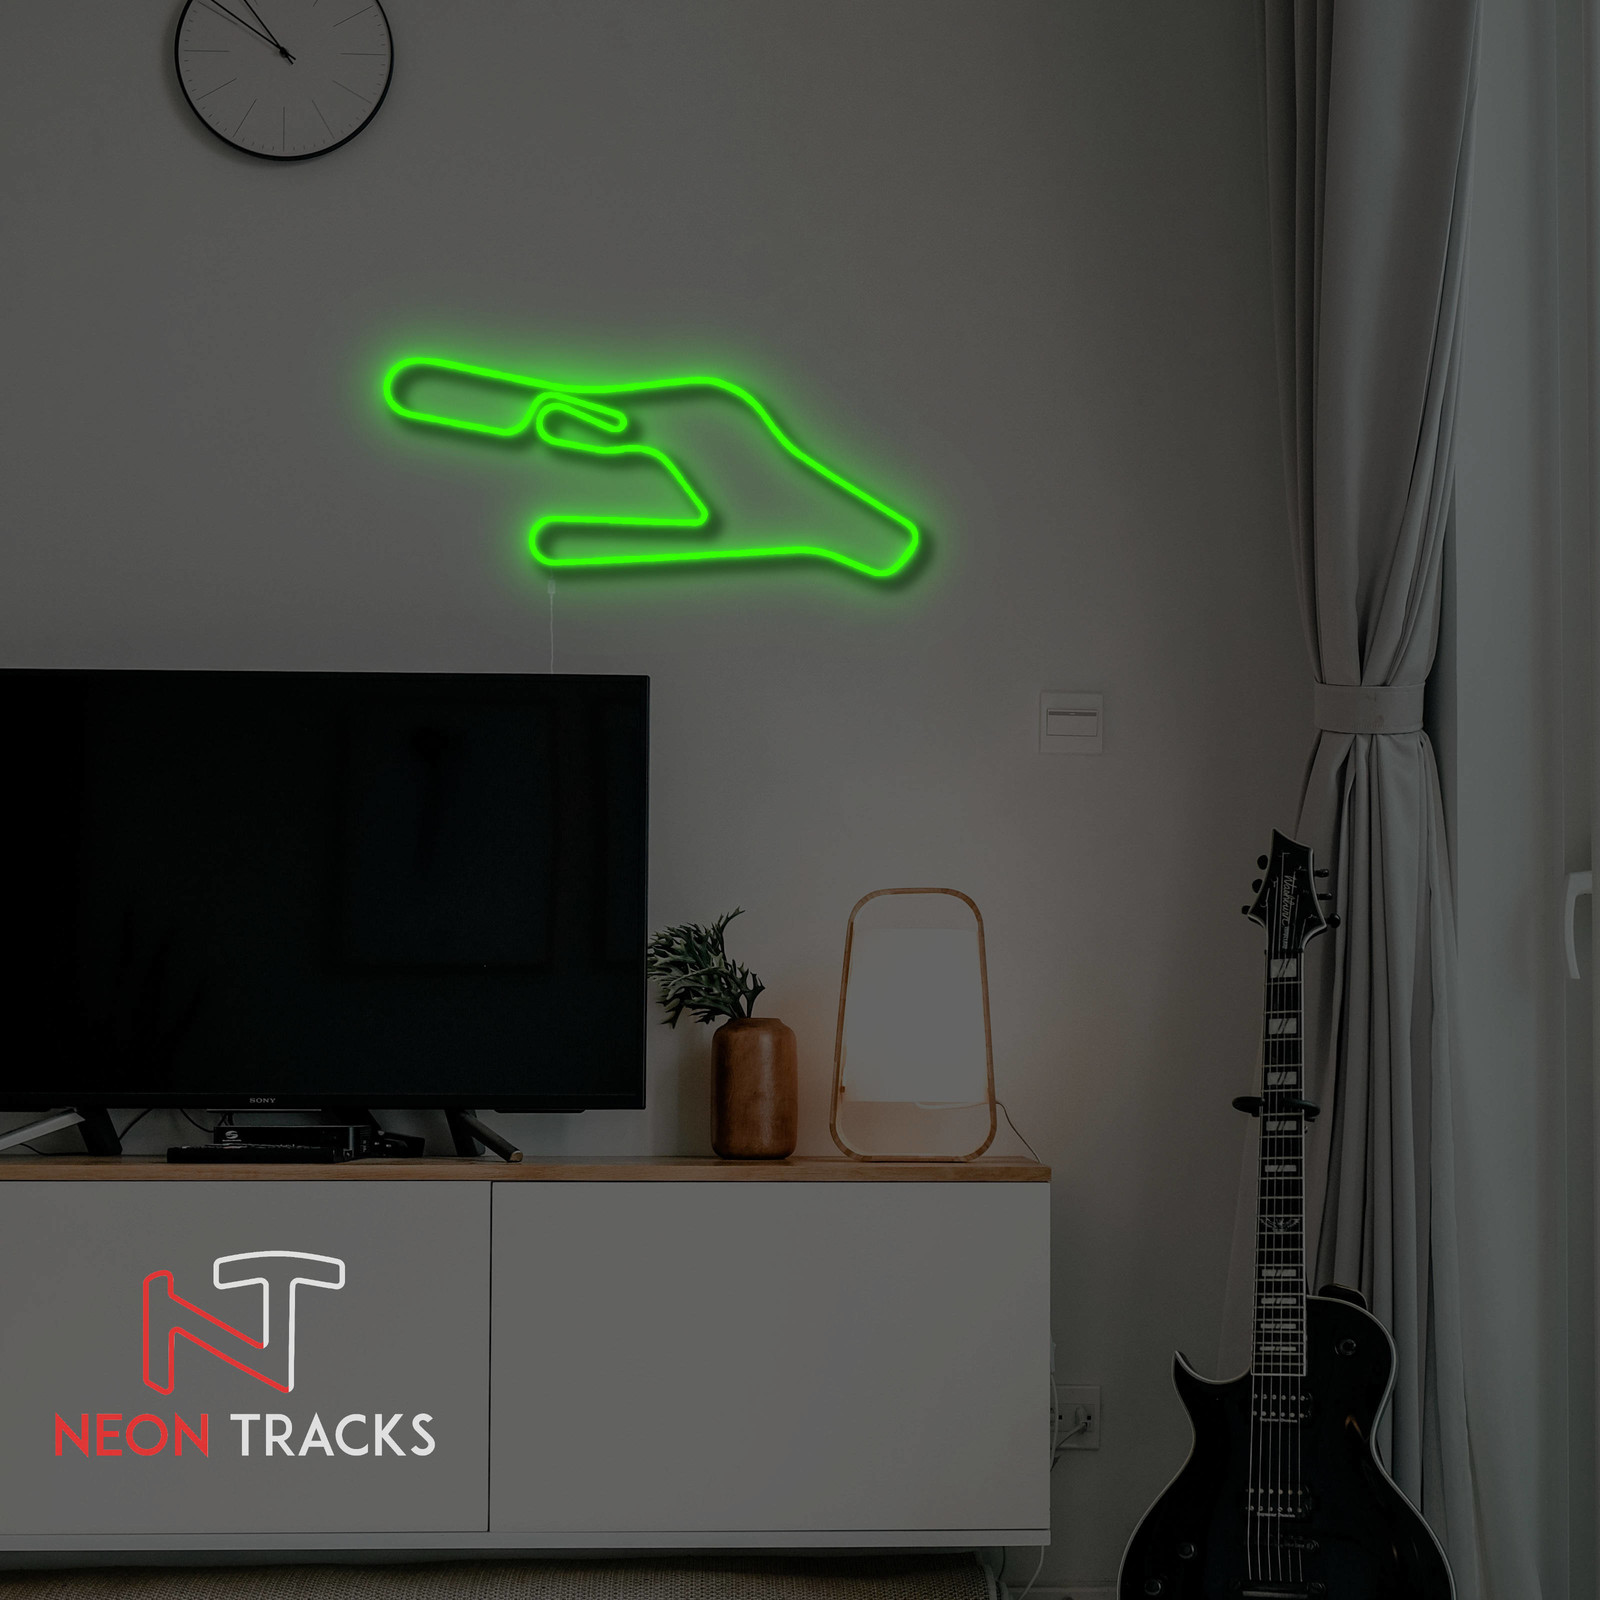 Neon Tracks Vallelunga Circuit - Italy